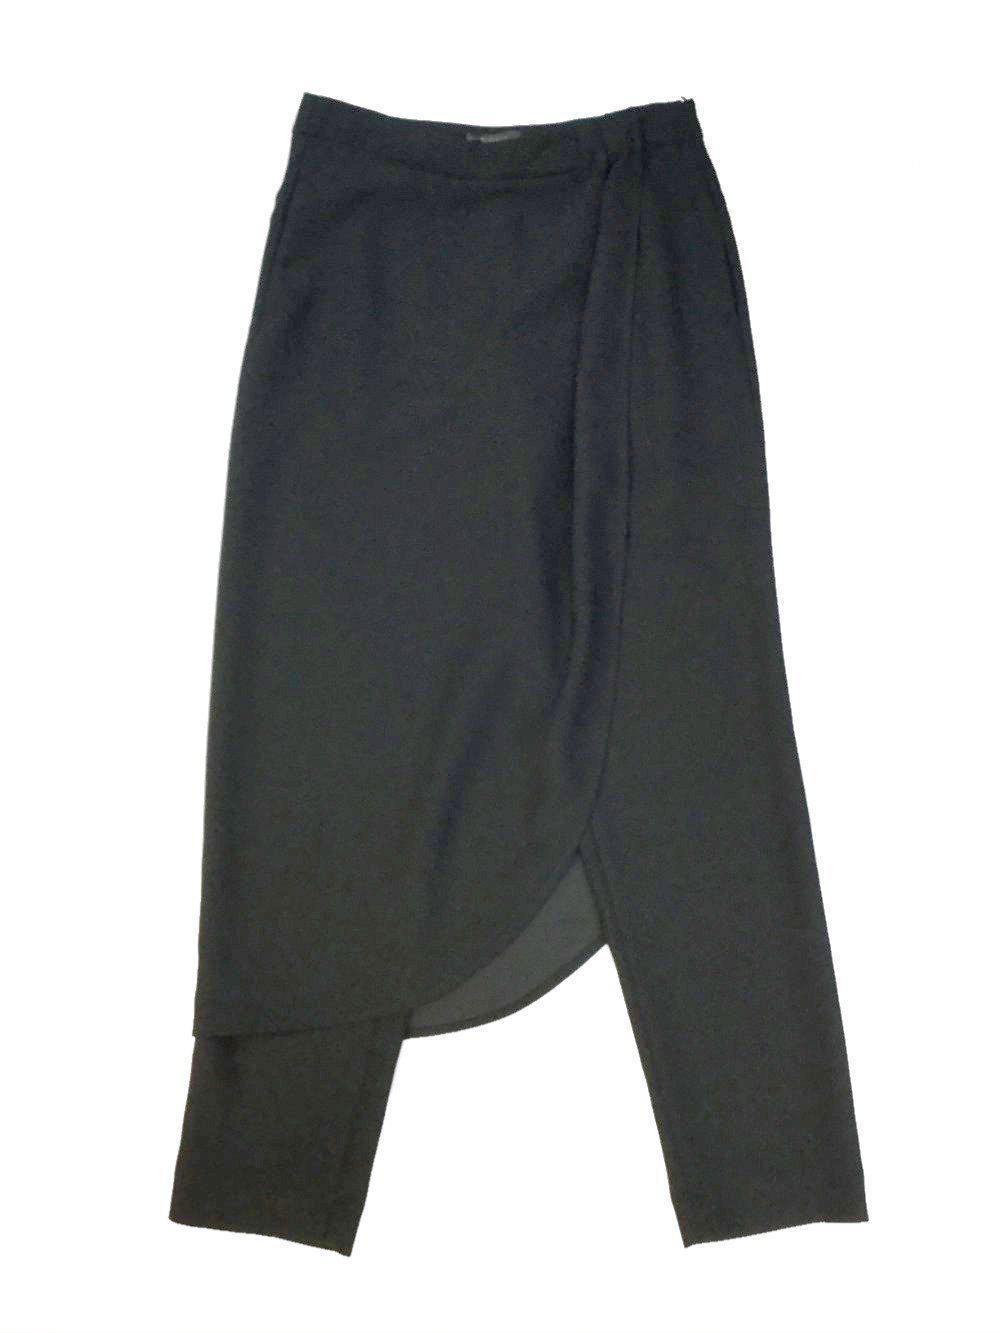 Peserico Skirt Wrap Pants Black-designer resale